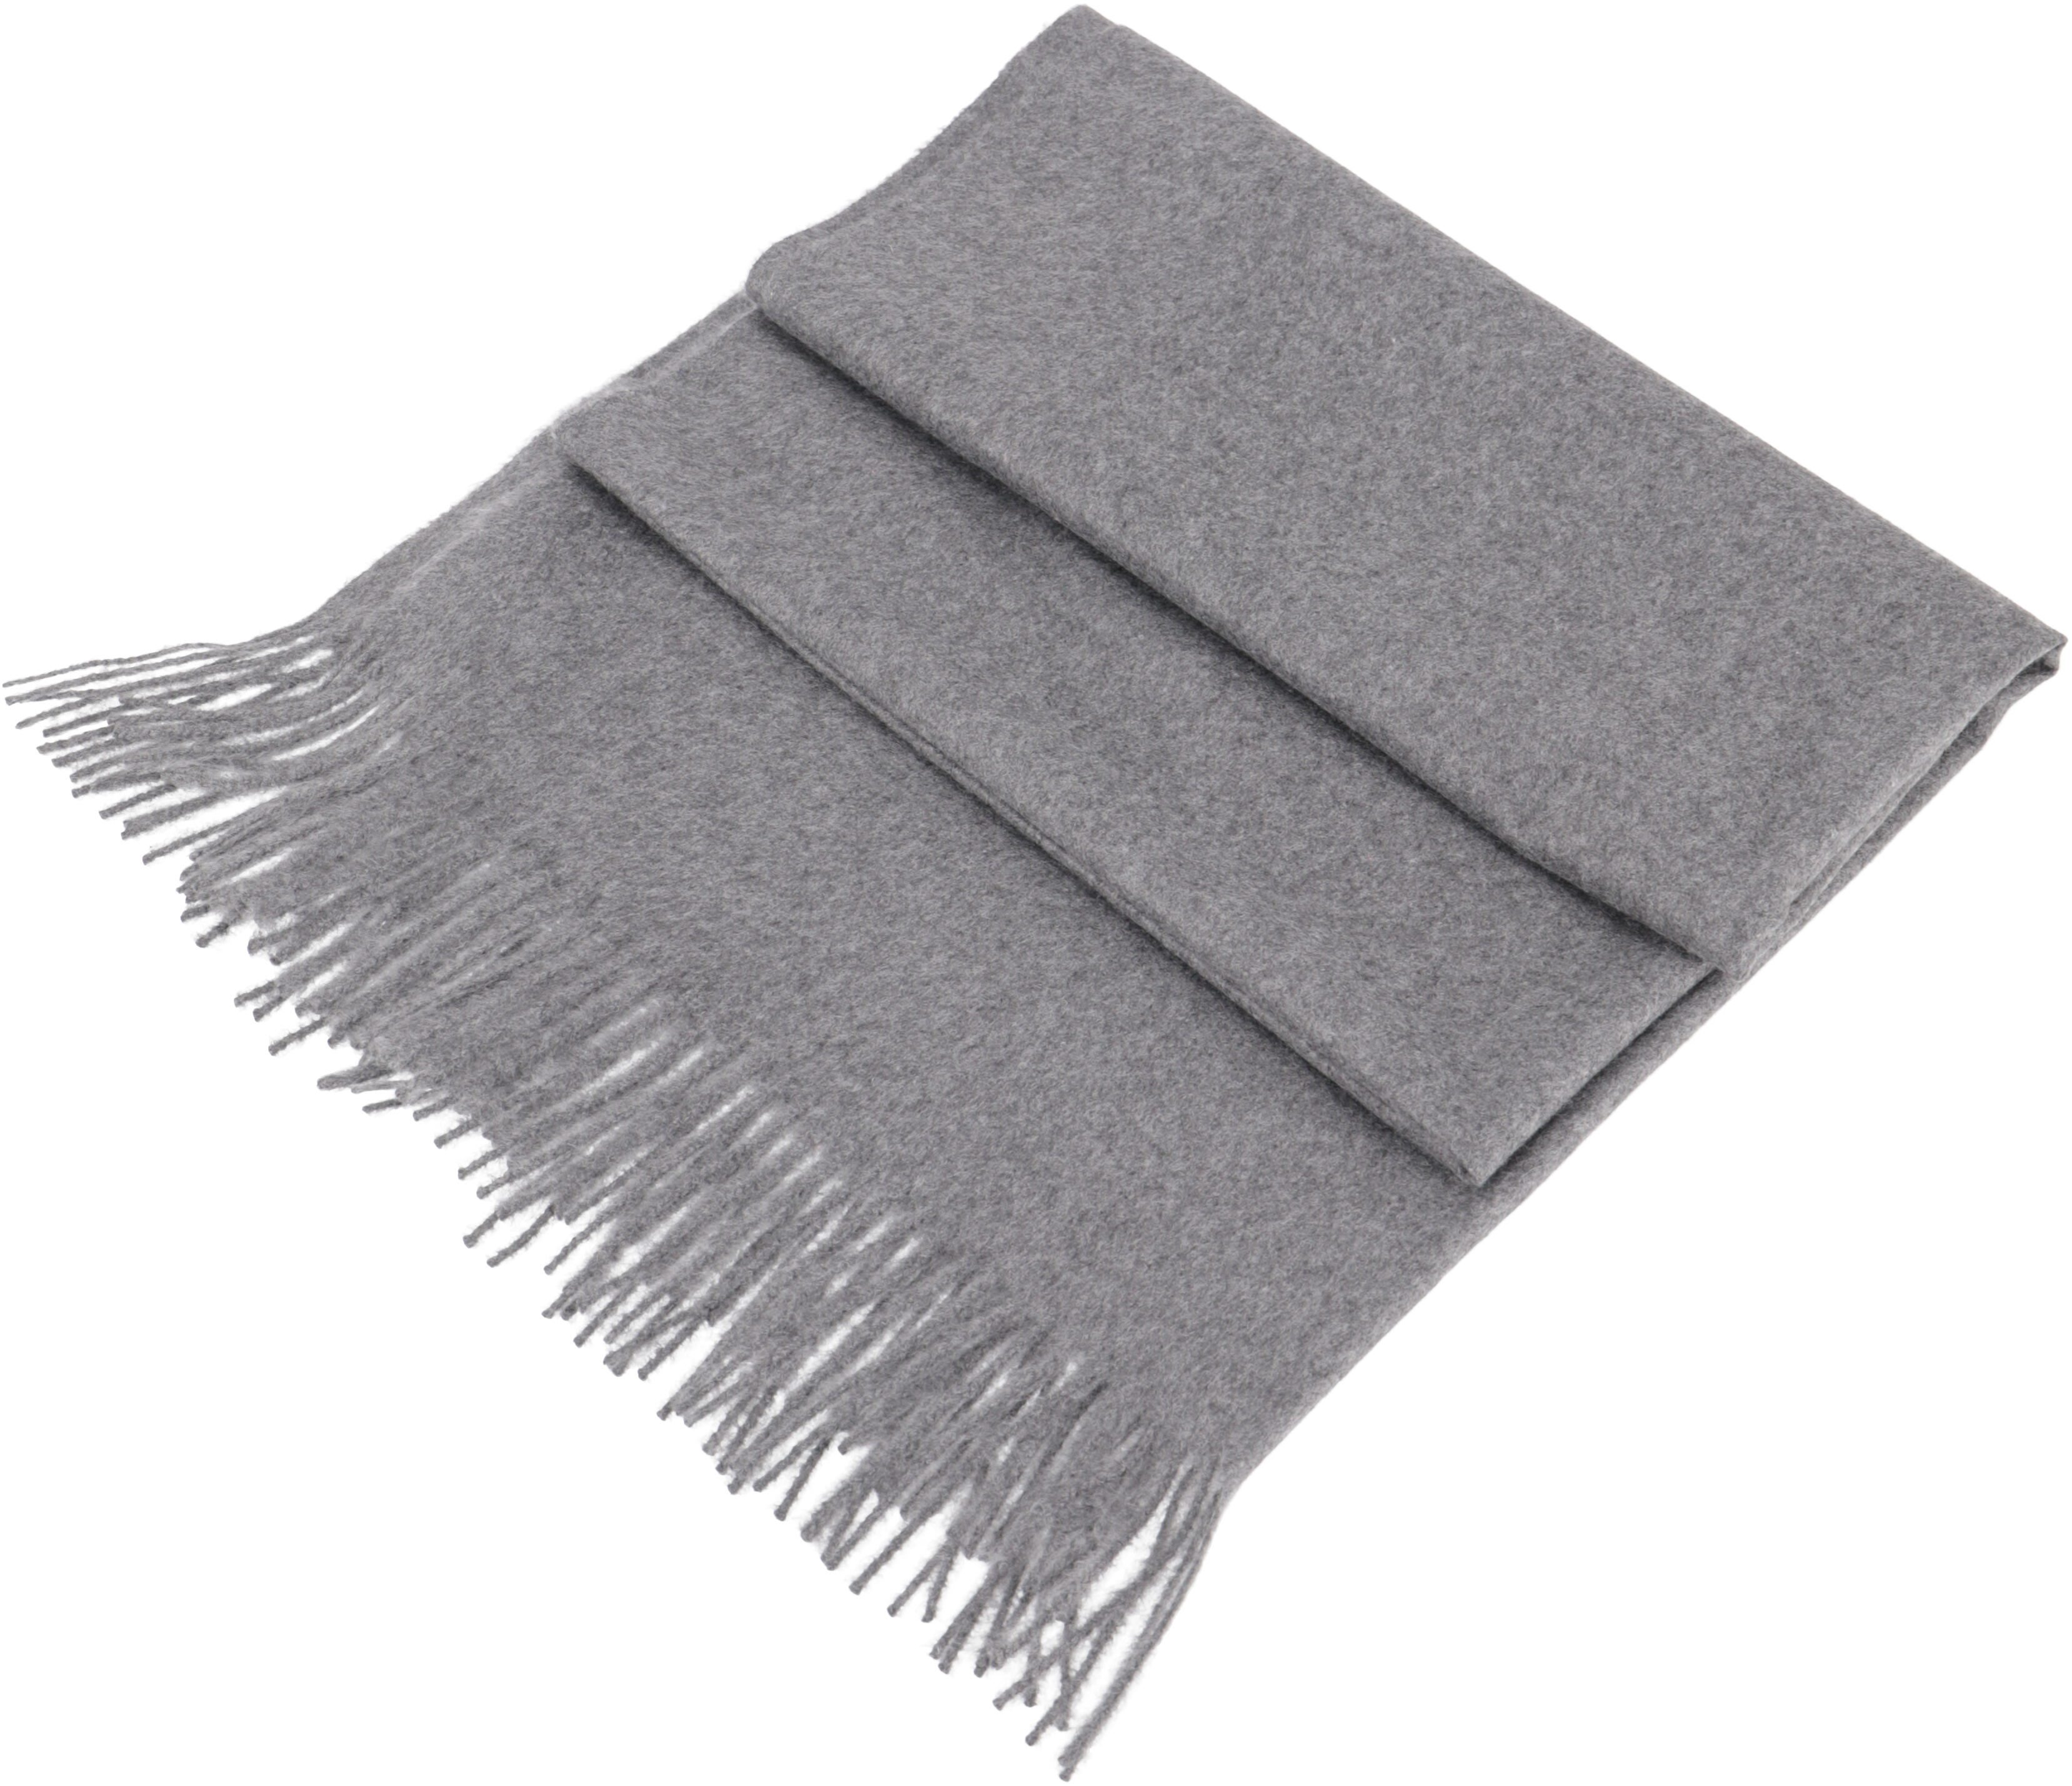 Kaufe jetzt den Superweichen Schal Wollschal Breiter in von Guru-Shop: Grau